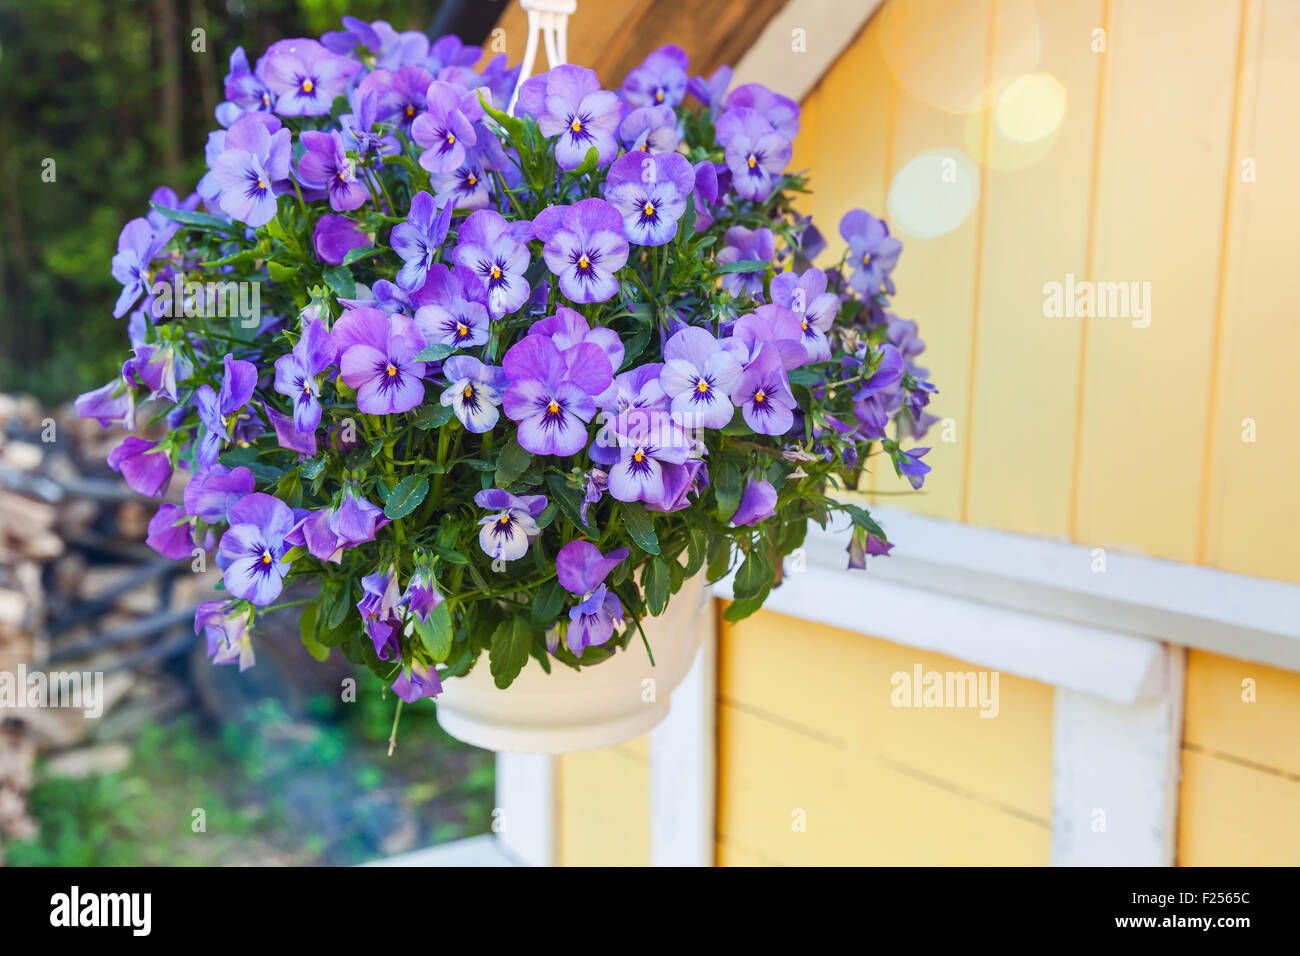 Pensées bleues fleurs poussent dans un pot suspendu Banque D'Images